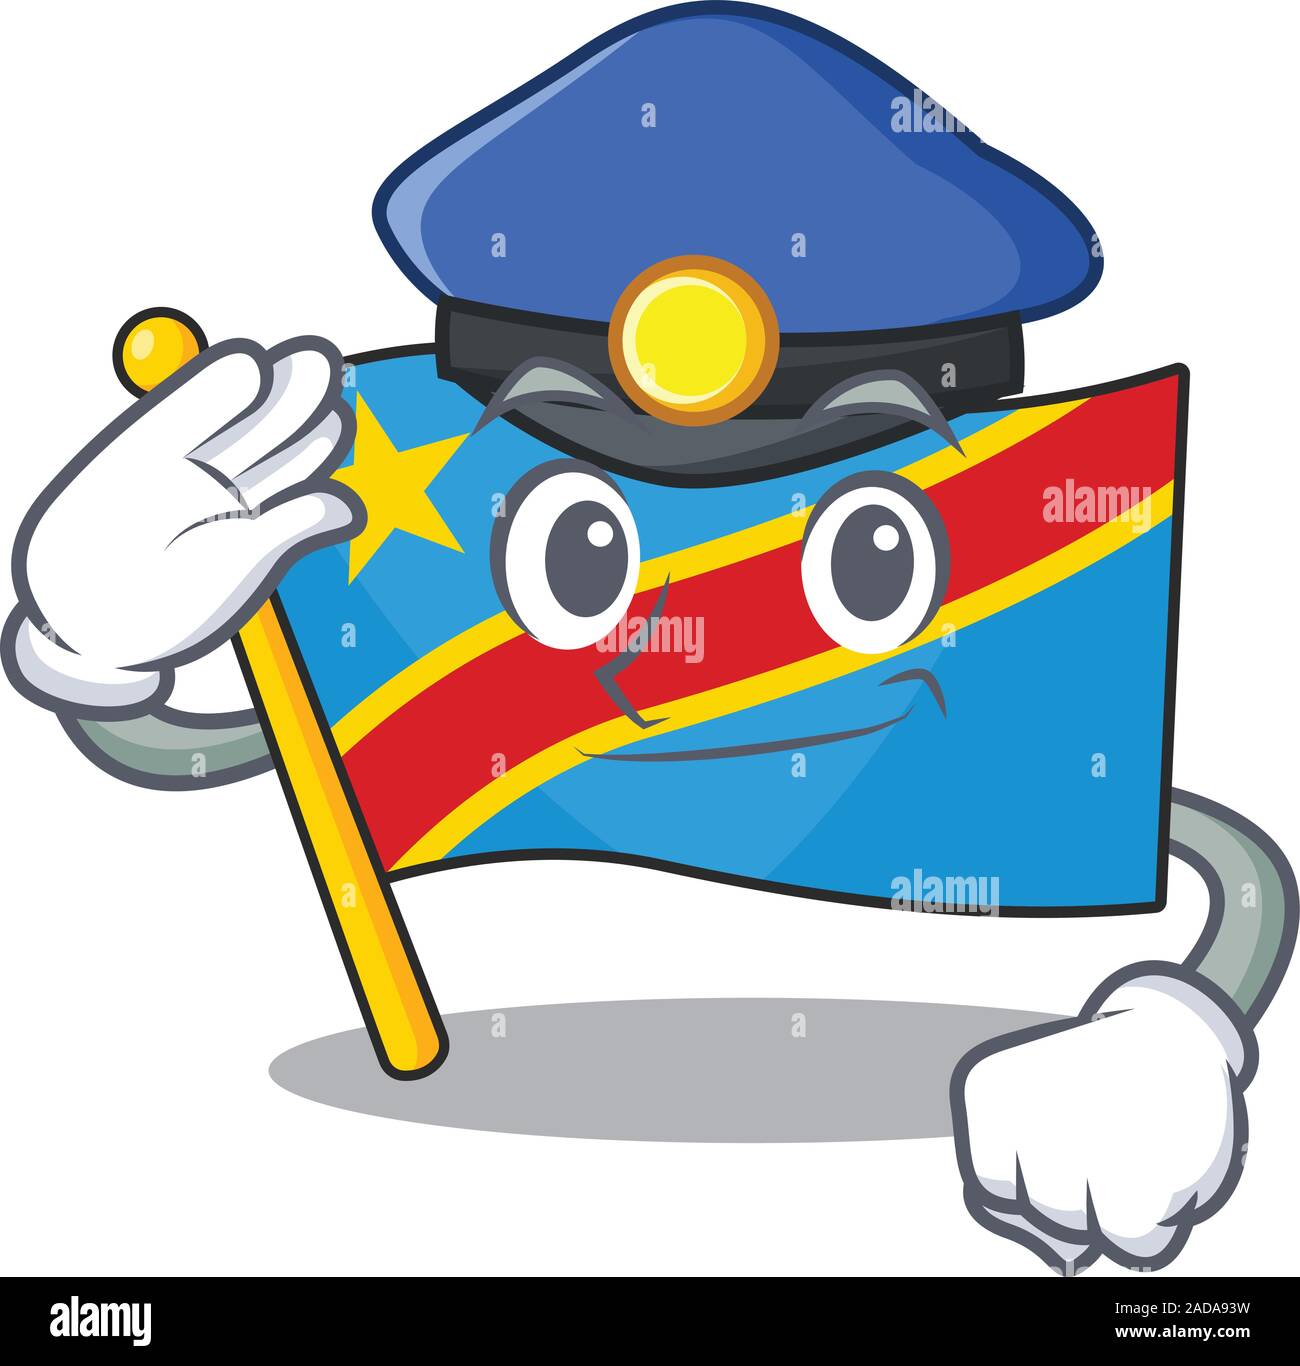 République démocratique du pavillon personnage vêtu comme un agent de police Illustration de Vecteur